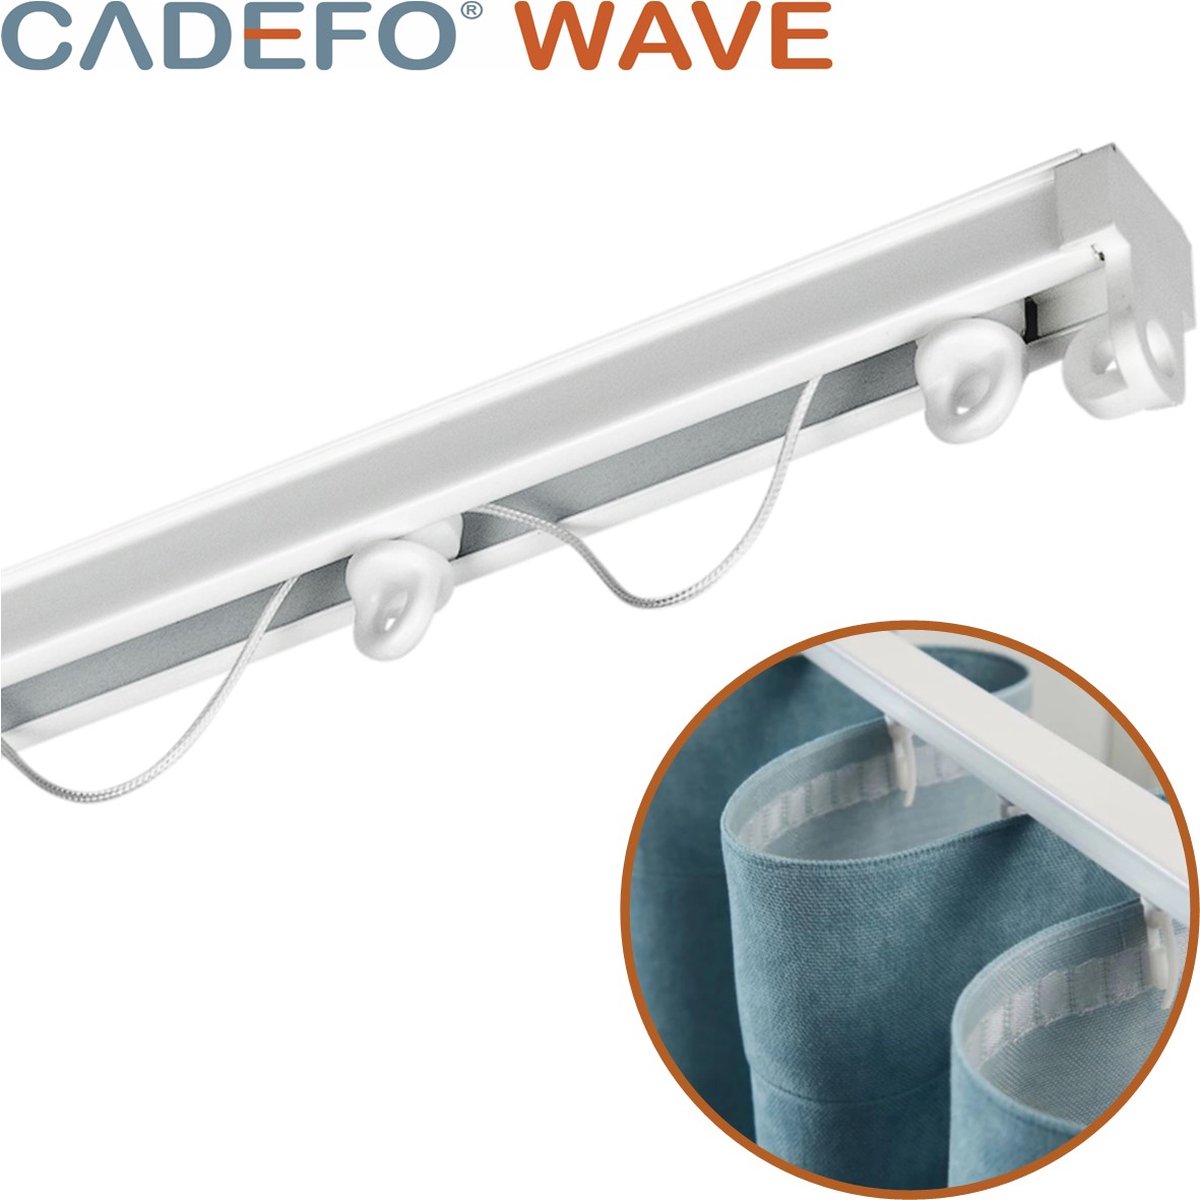 CADEFO WAVE (551 - 600 cm) Gordijnrails - Compleet op maat! - UIT 1 STUK - Leverbaar tot 6 meter - Plafondbevestiging - Lengte 592 cm